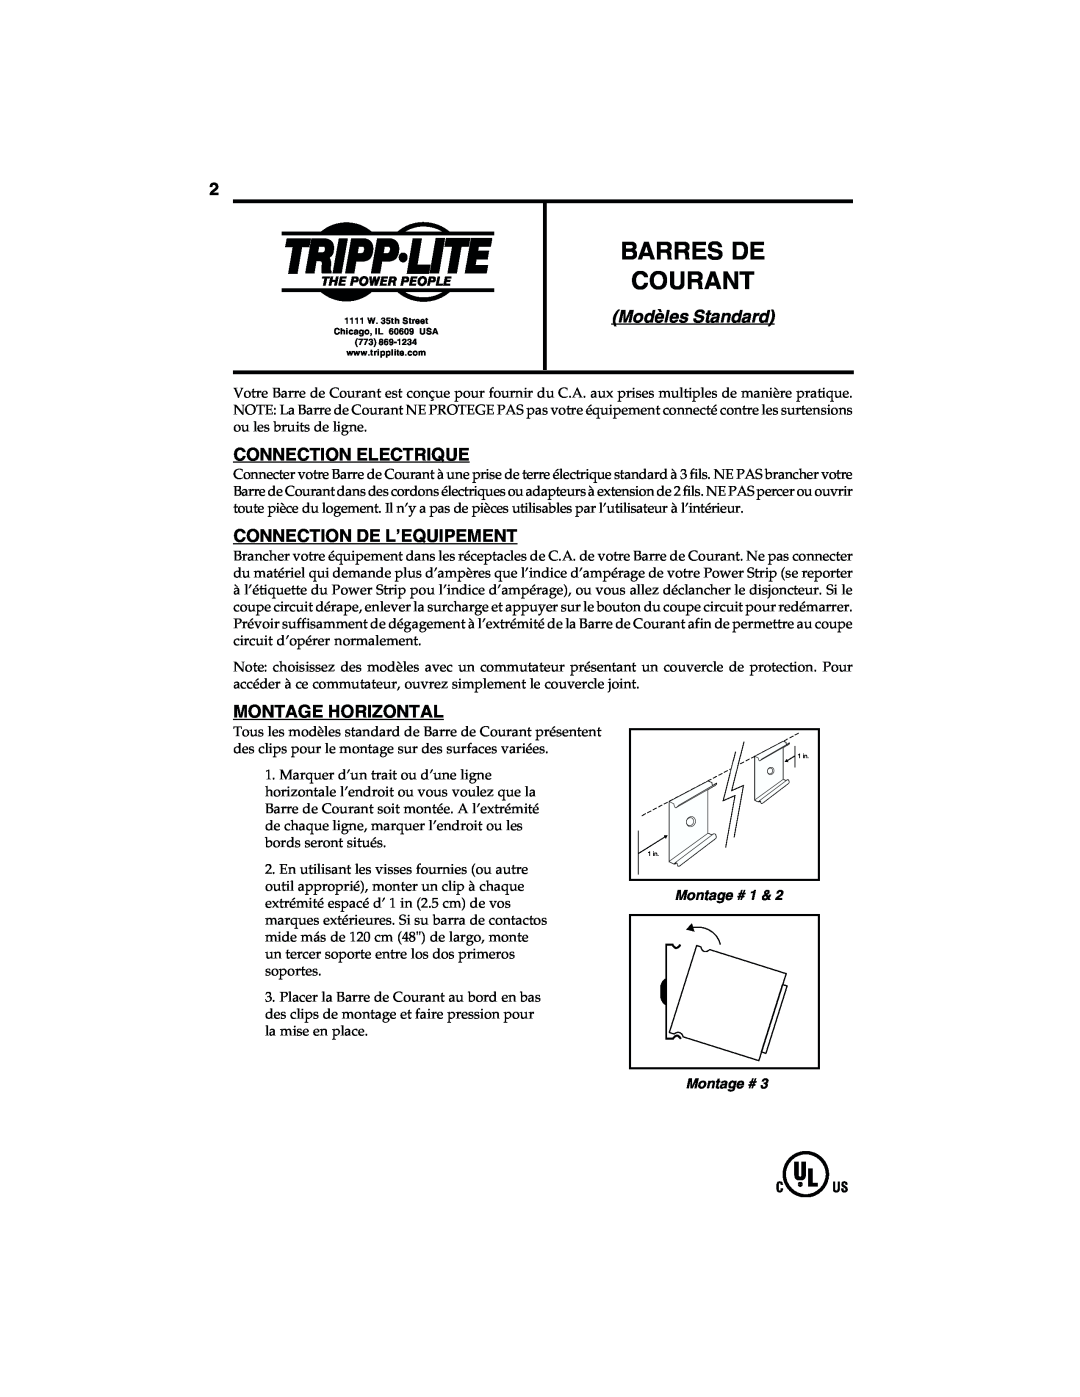 Tripp Lite 93-1990 (200108029) Barres De Courant, Modèles Standard, Connection Electrique, Connection De L’Equipement 